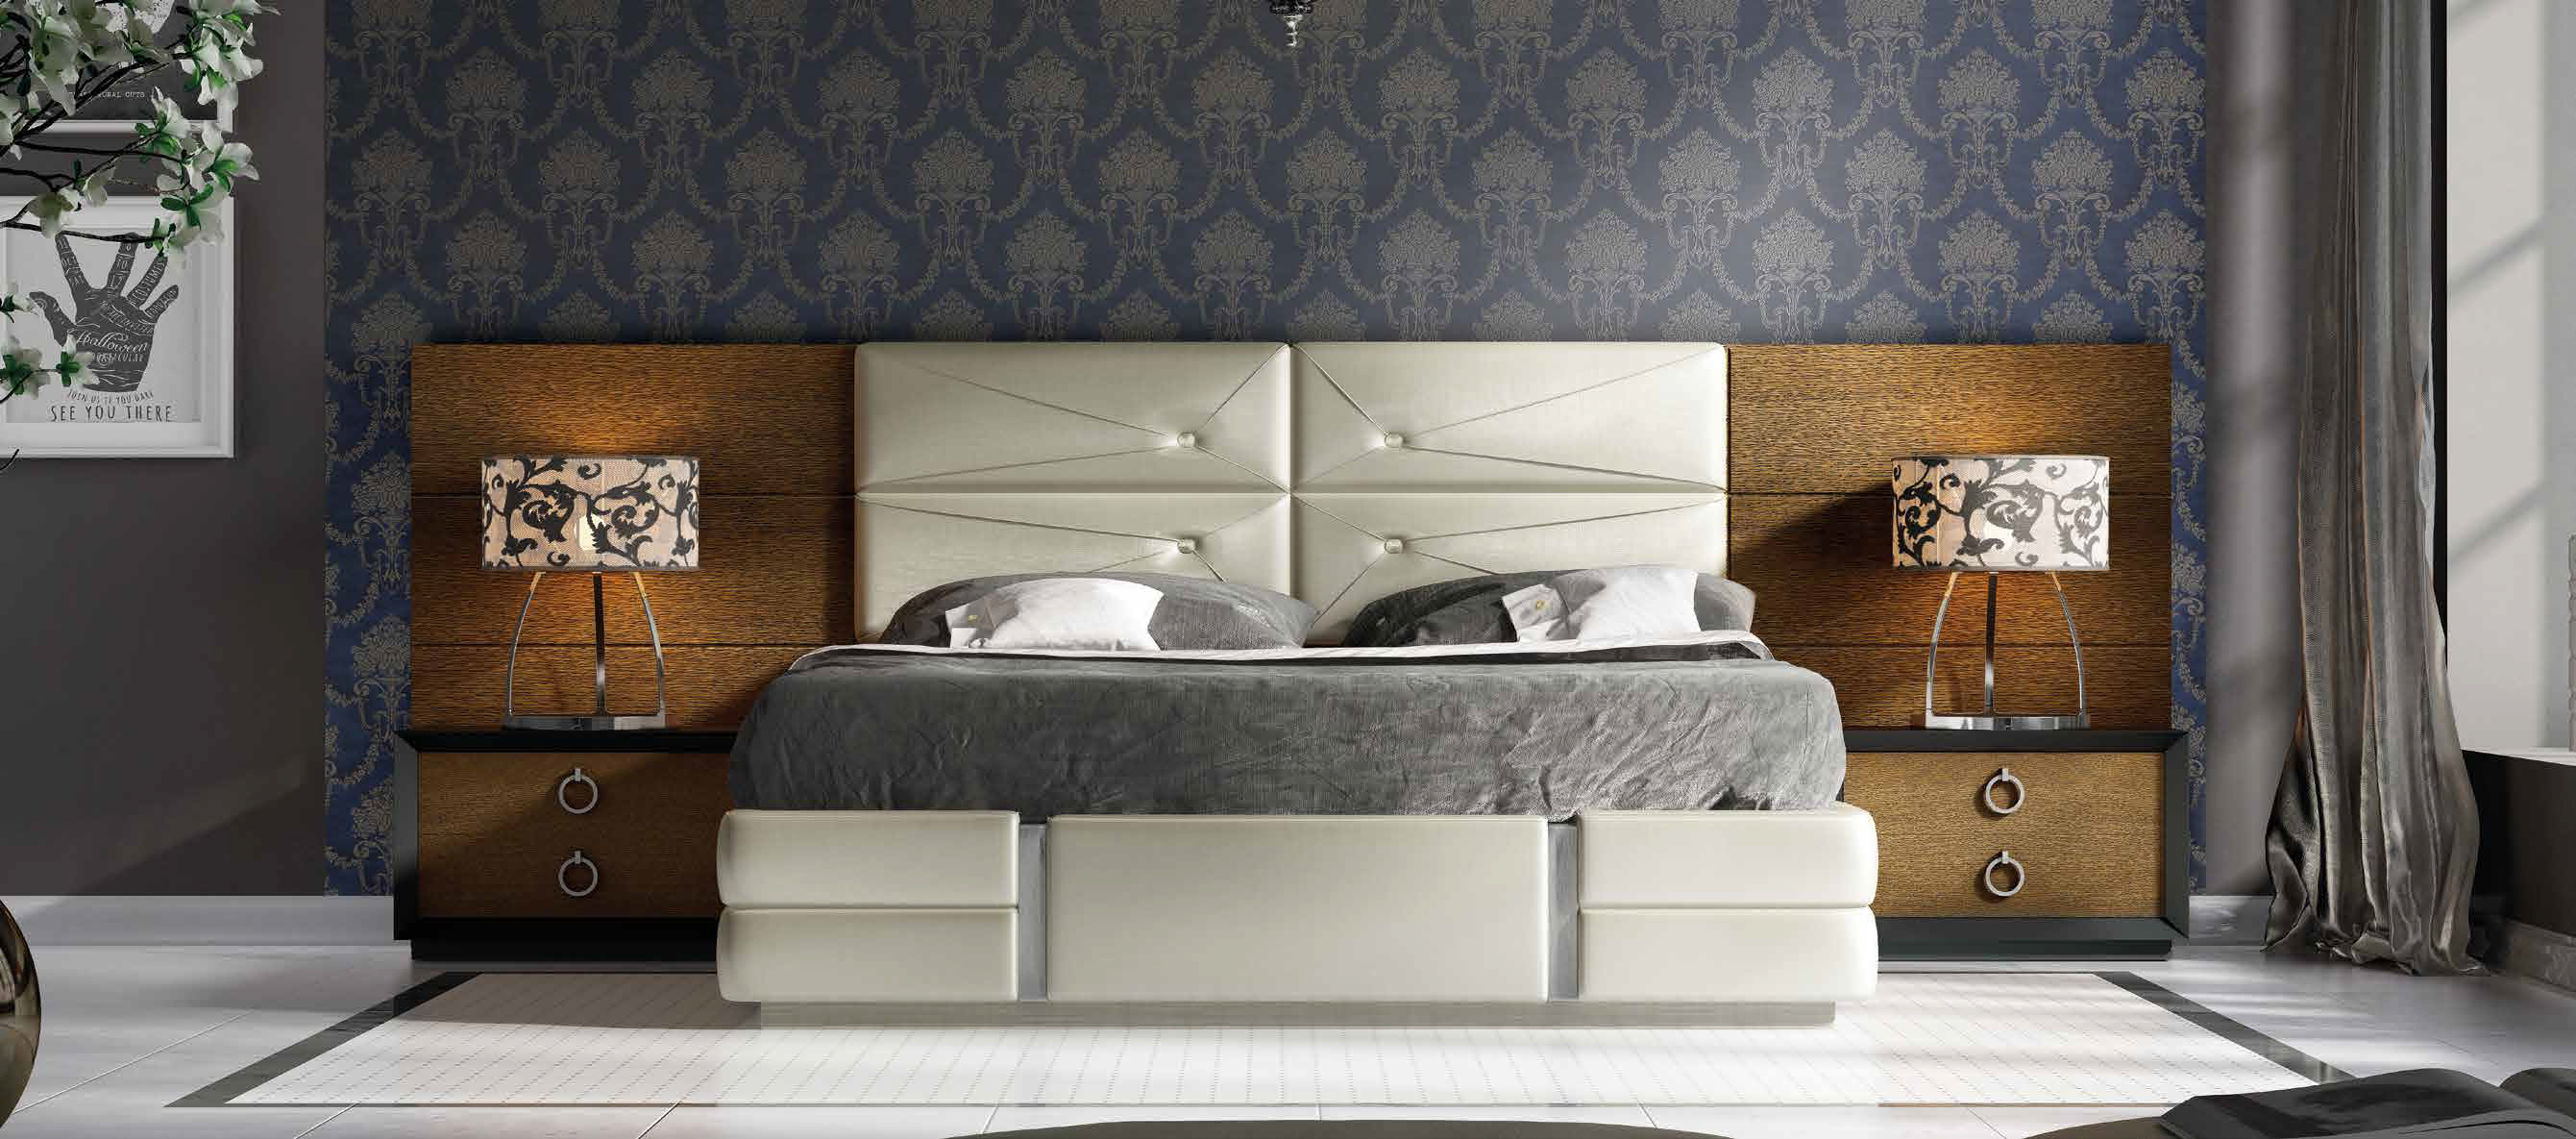 Brands Franco Furniture Avanty Bedrooms, Spain DOR 66